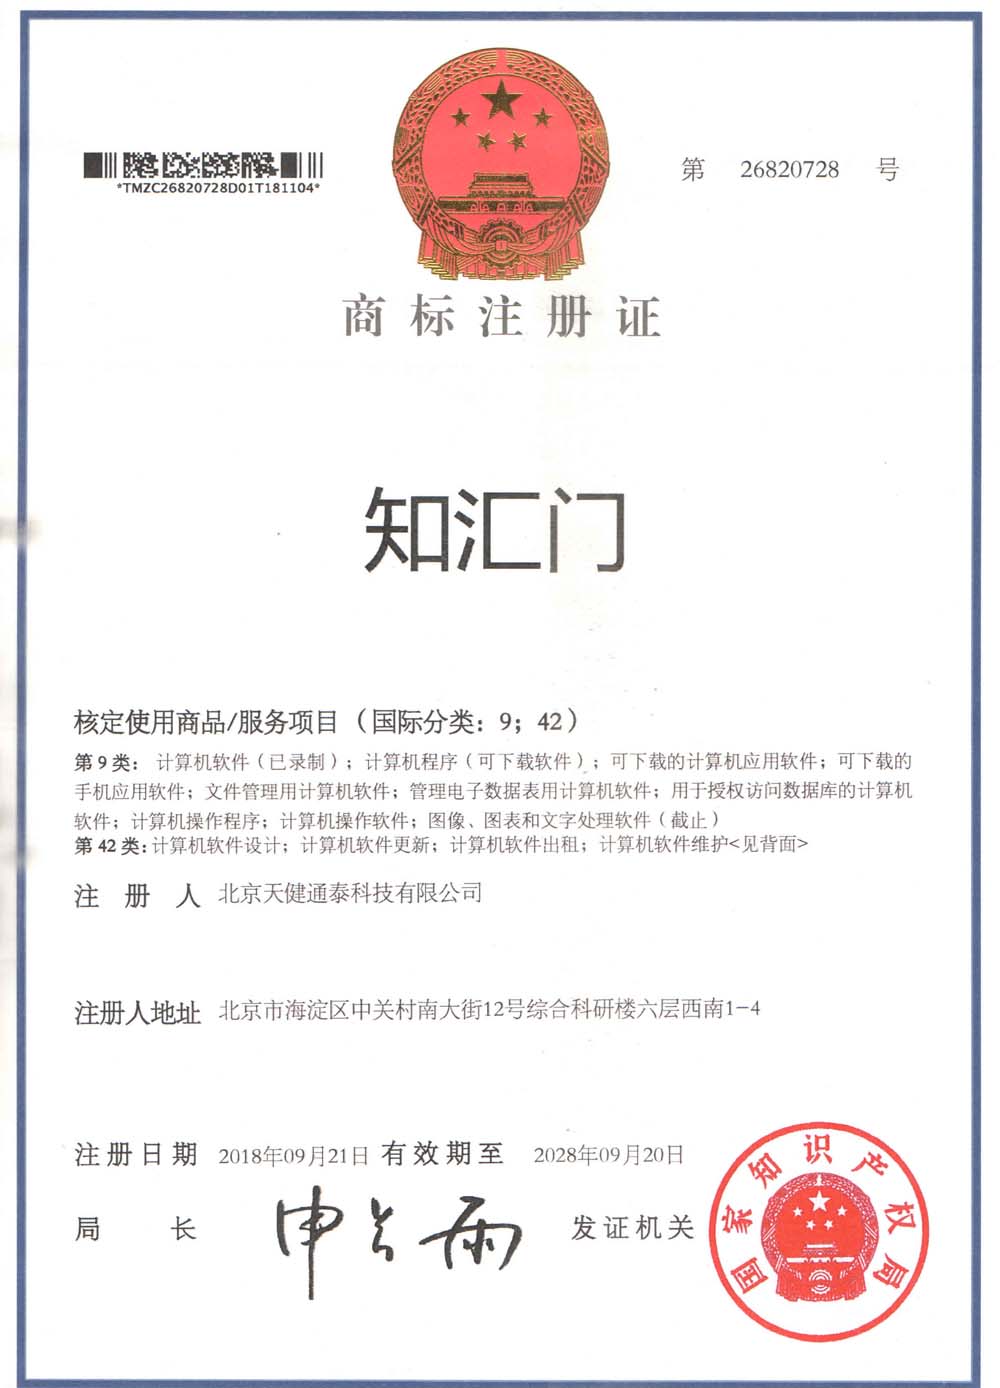 天健通泰喜报连连 – 知汇门成功取得国家商标注册证书